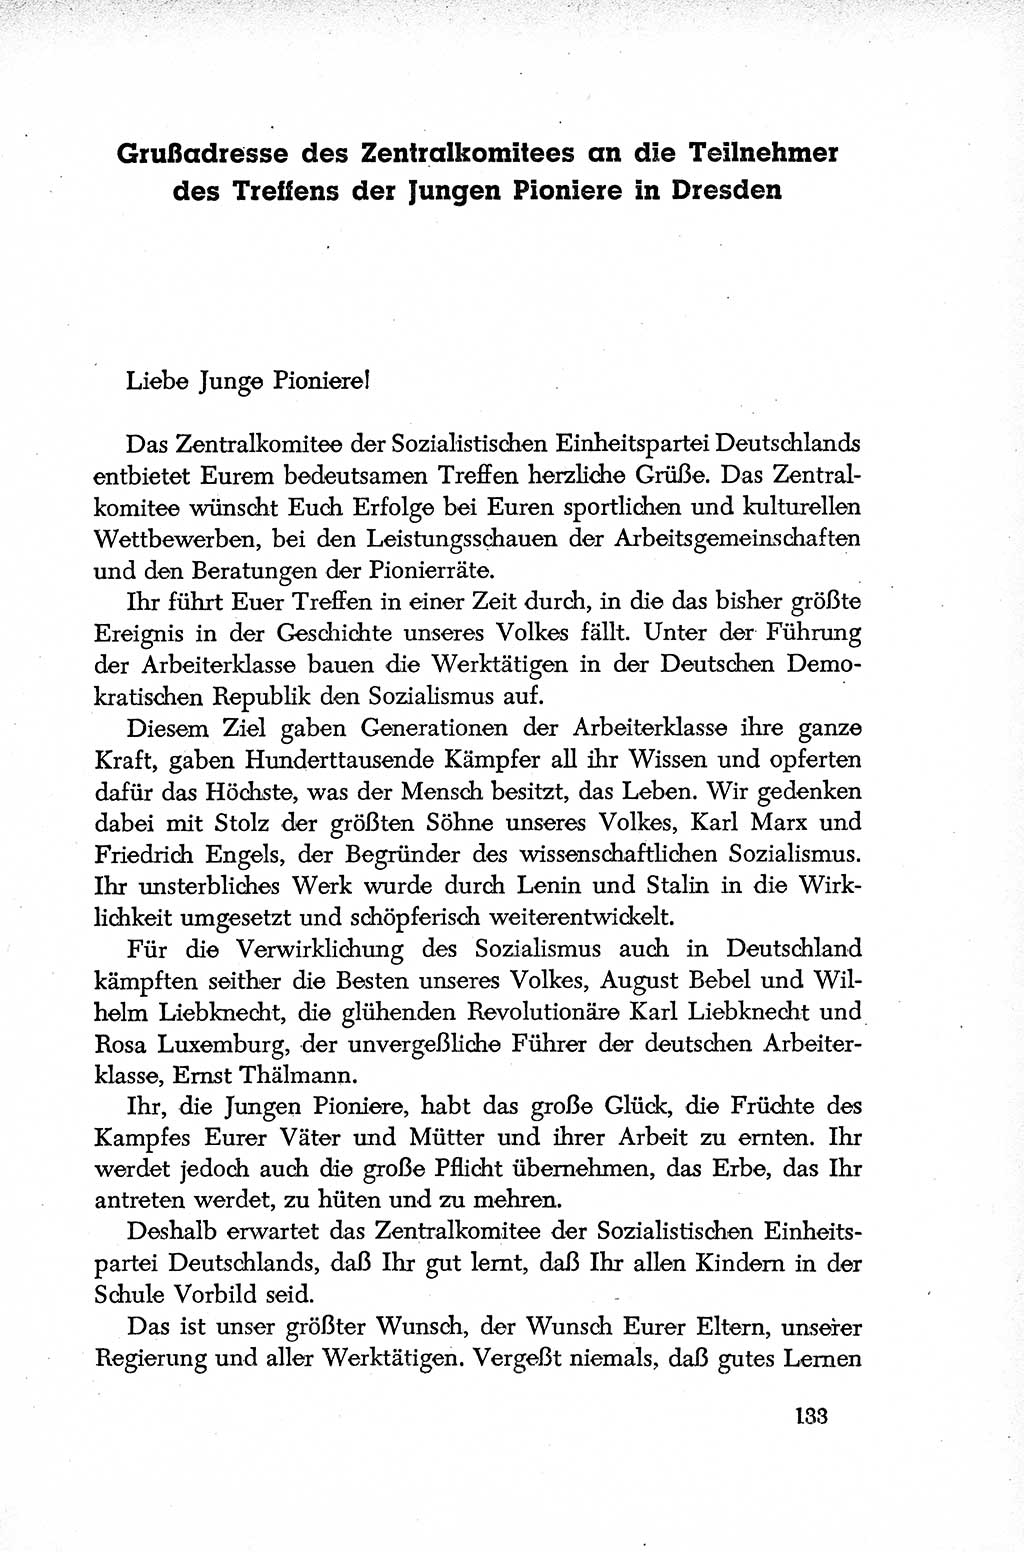 Dokumente der Sozialistischen Einheitspartei Deutschlands (SED) [Deutsche Demokratische Republik (DDR)] 1952-1953, Seite 133 (Dok. SED DDR 1952-1953, S. 133)